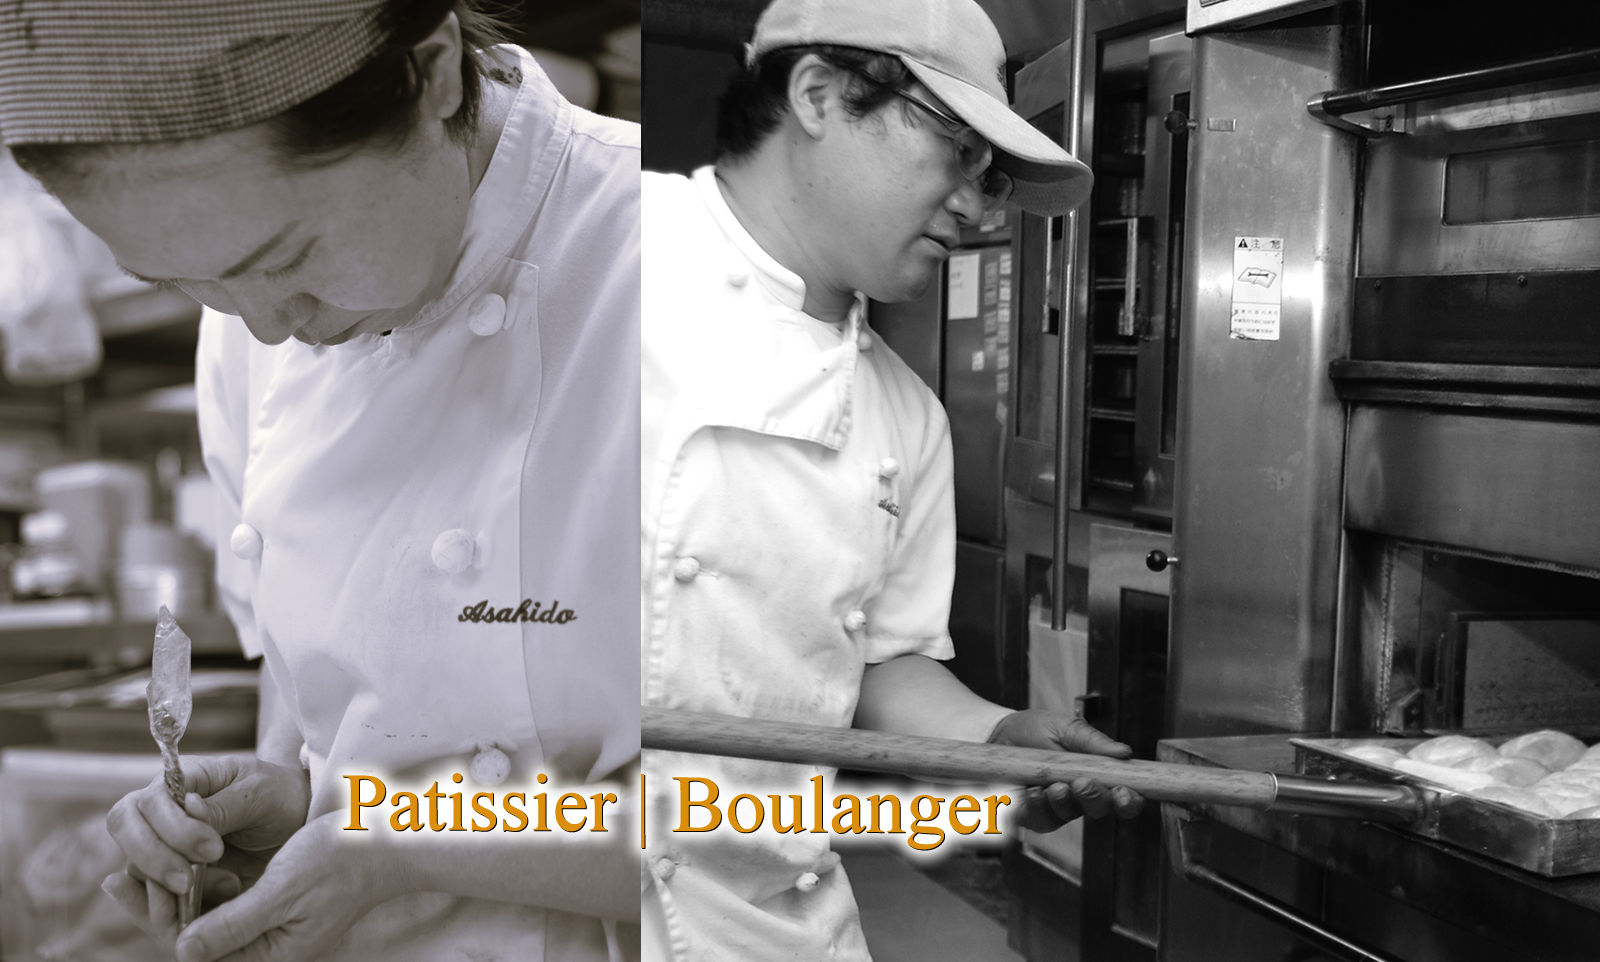 Patissier | Boulanger